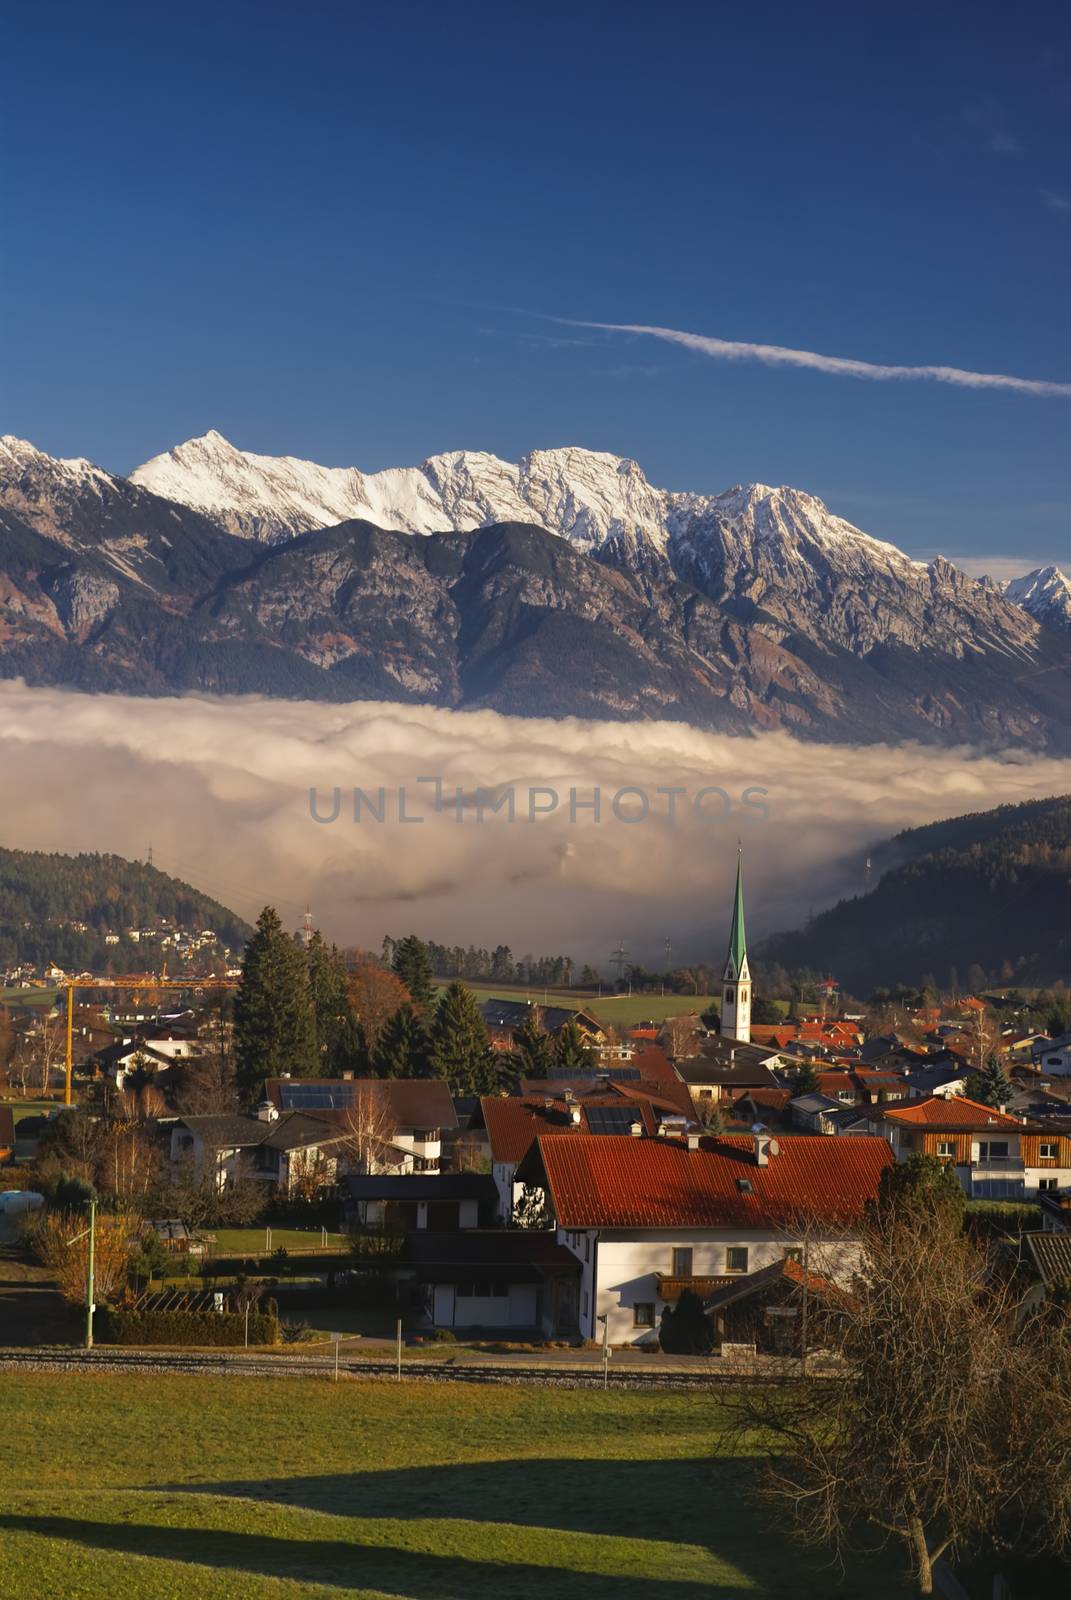 Picturesque village in Tirol Alps near Innsbruck